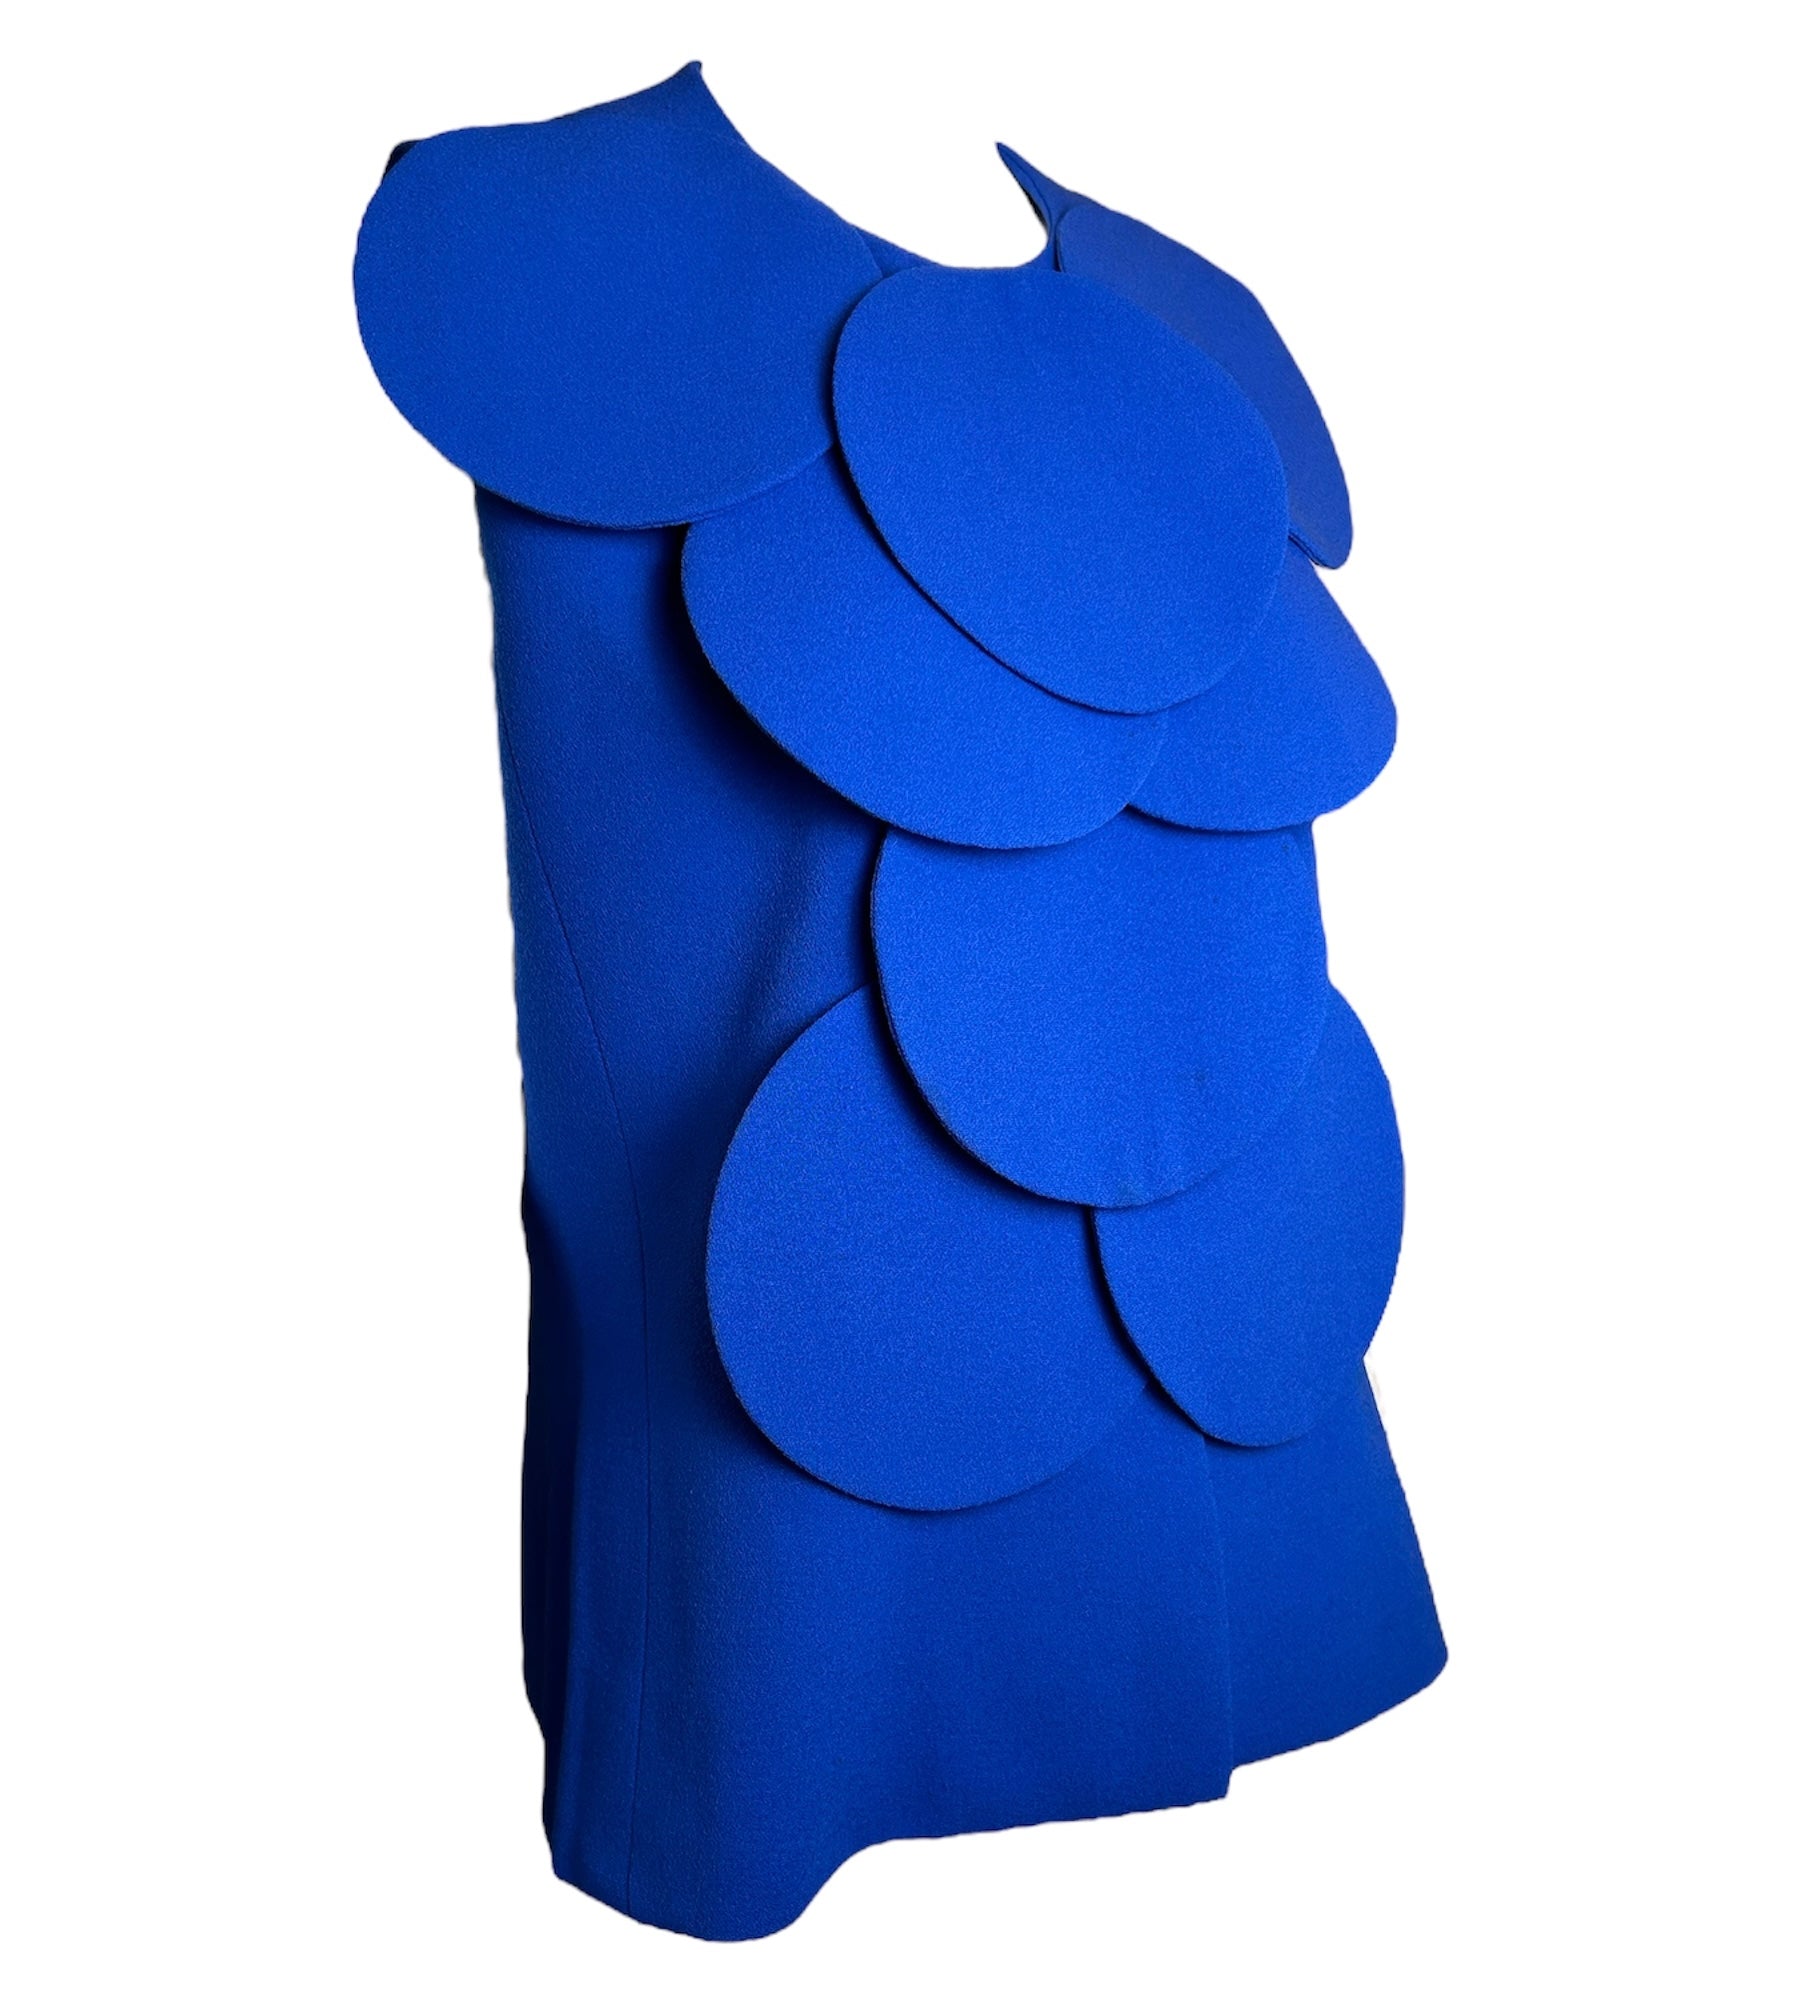 Pierre Cardin Rare Blue Bubble Vest-Jacket DETAIL PHOTO 2 OF 6